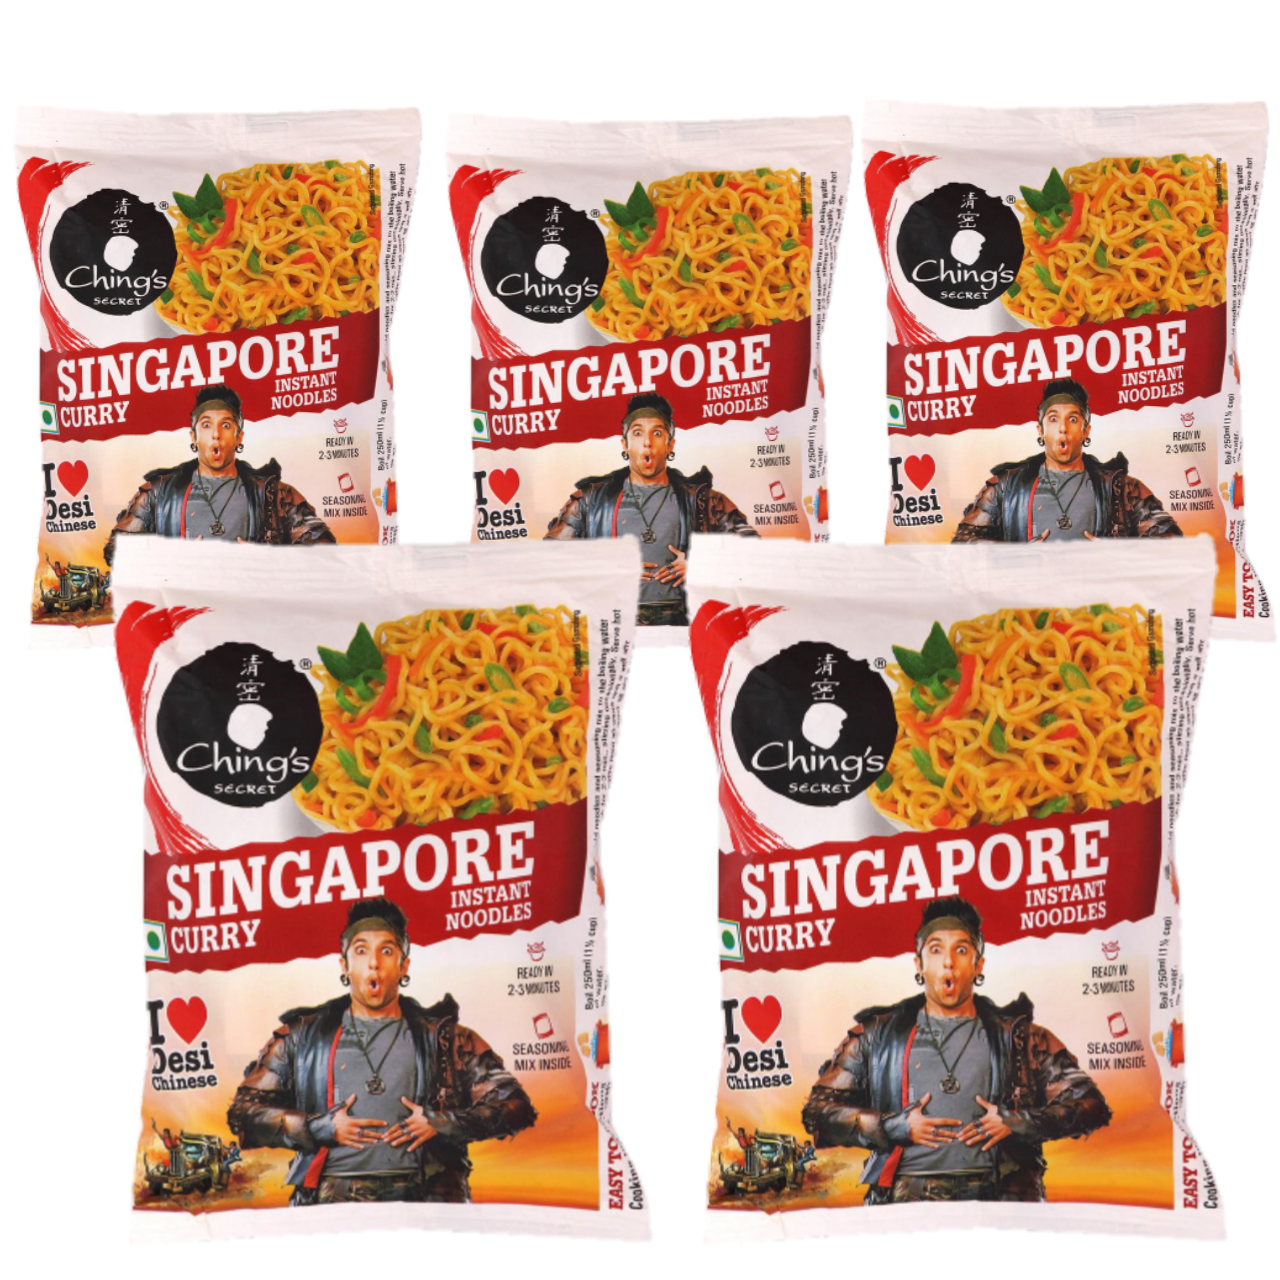 Chings Secret Singapore Curry Instant Noodles (Bundle of 5 x 60g)